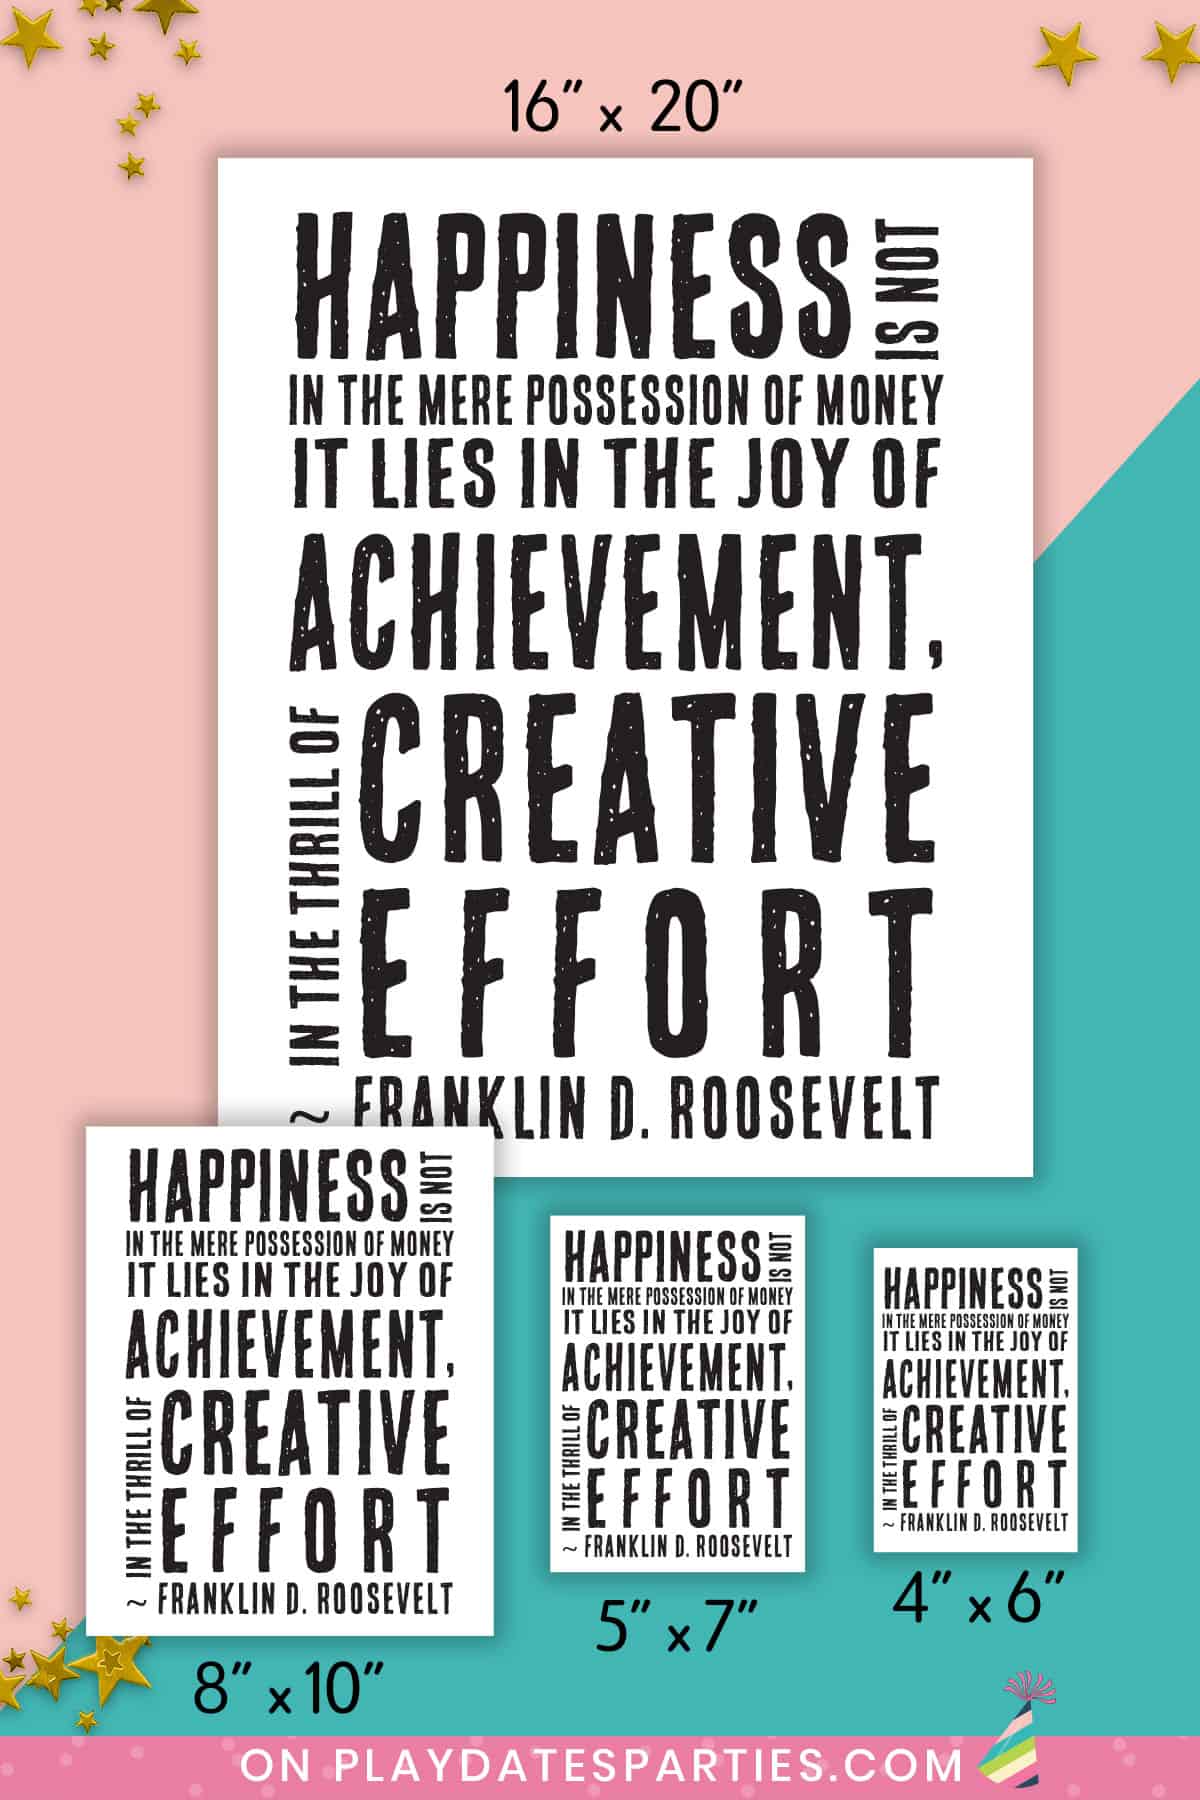 Motivational Art Print - Happiness is in Creative Efffort (Roosevelt Quote)